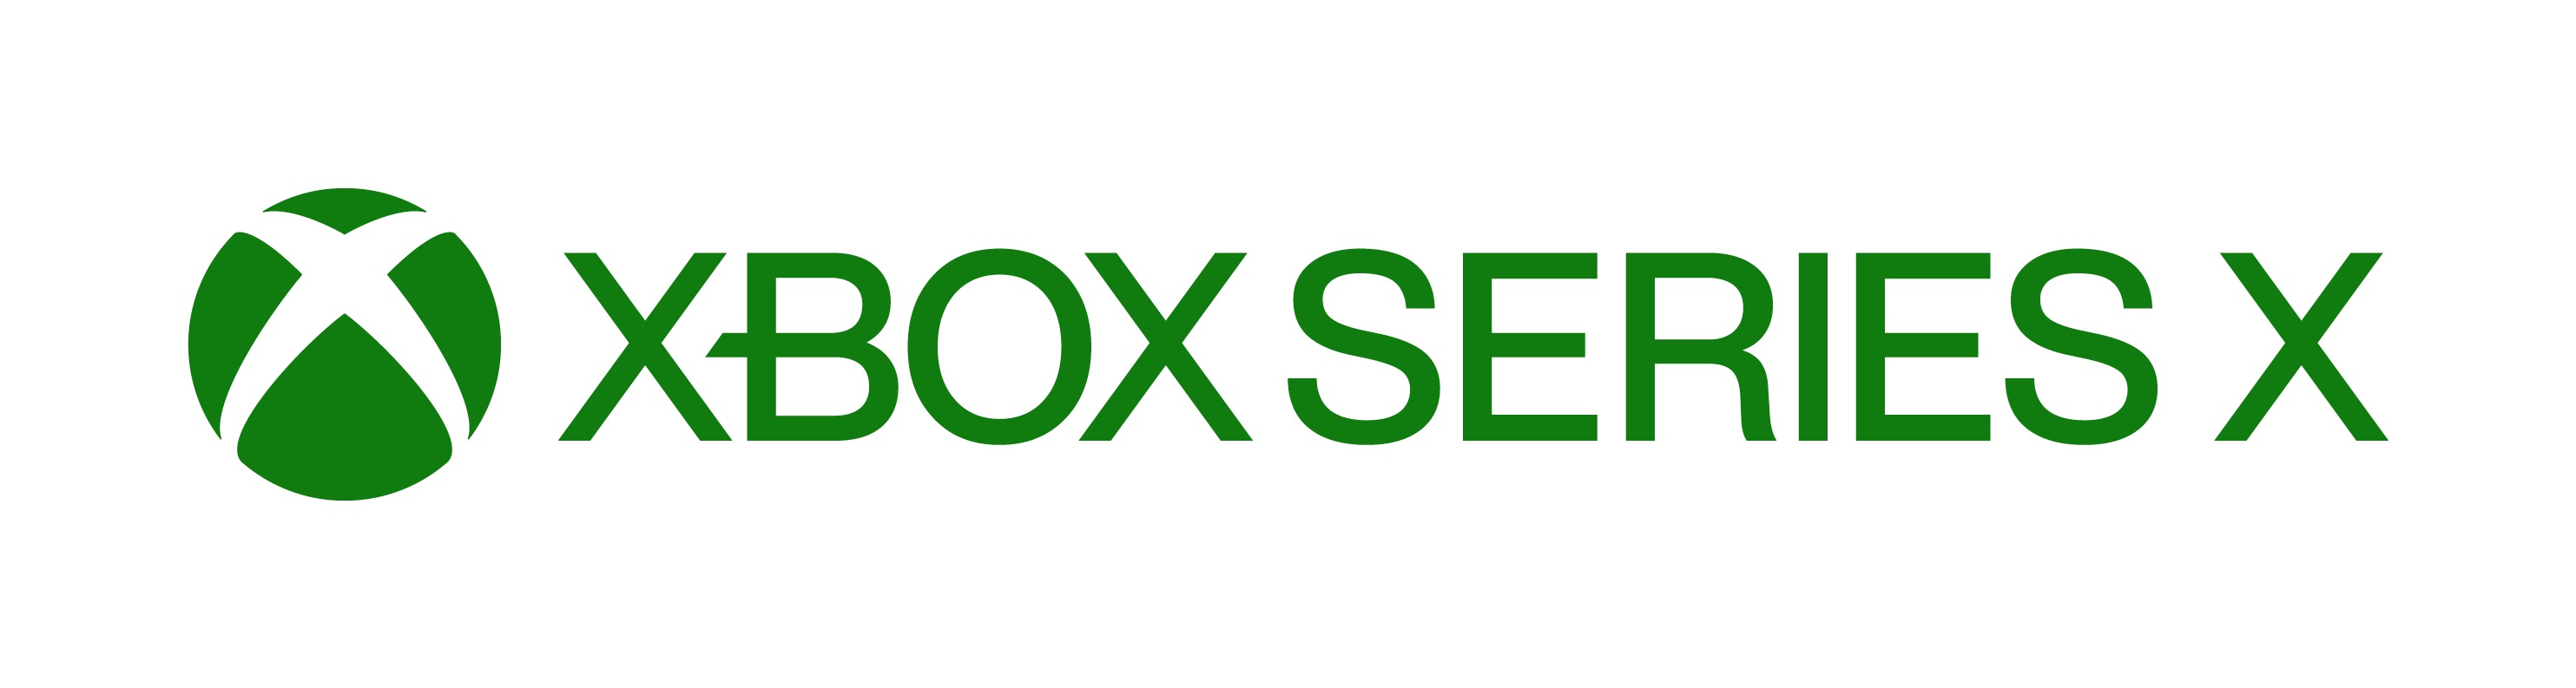 Przedsprzedaż nowej konsoli Xbox Series X w Play